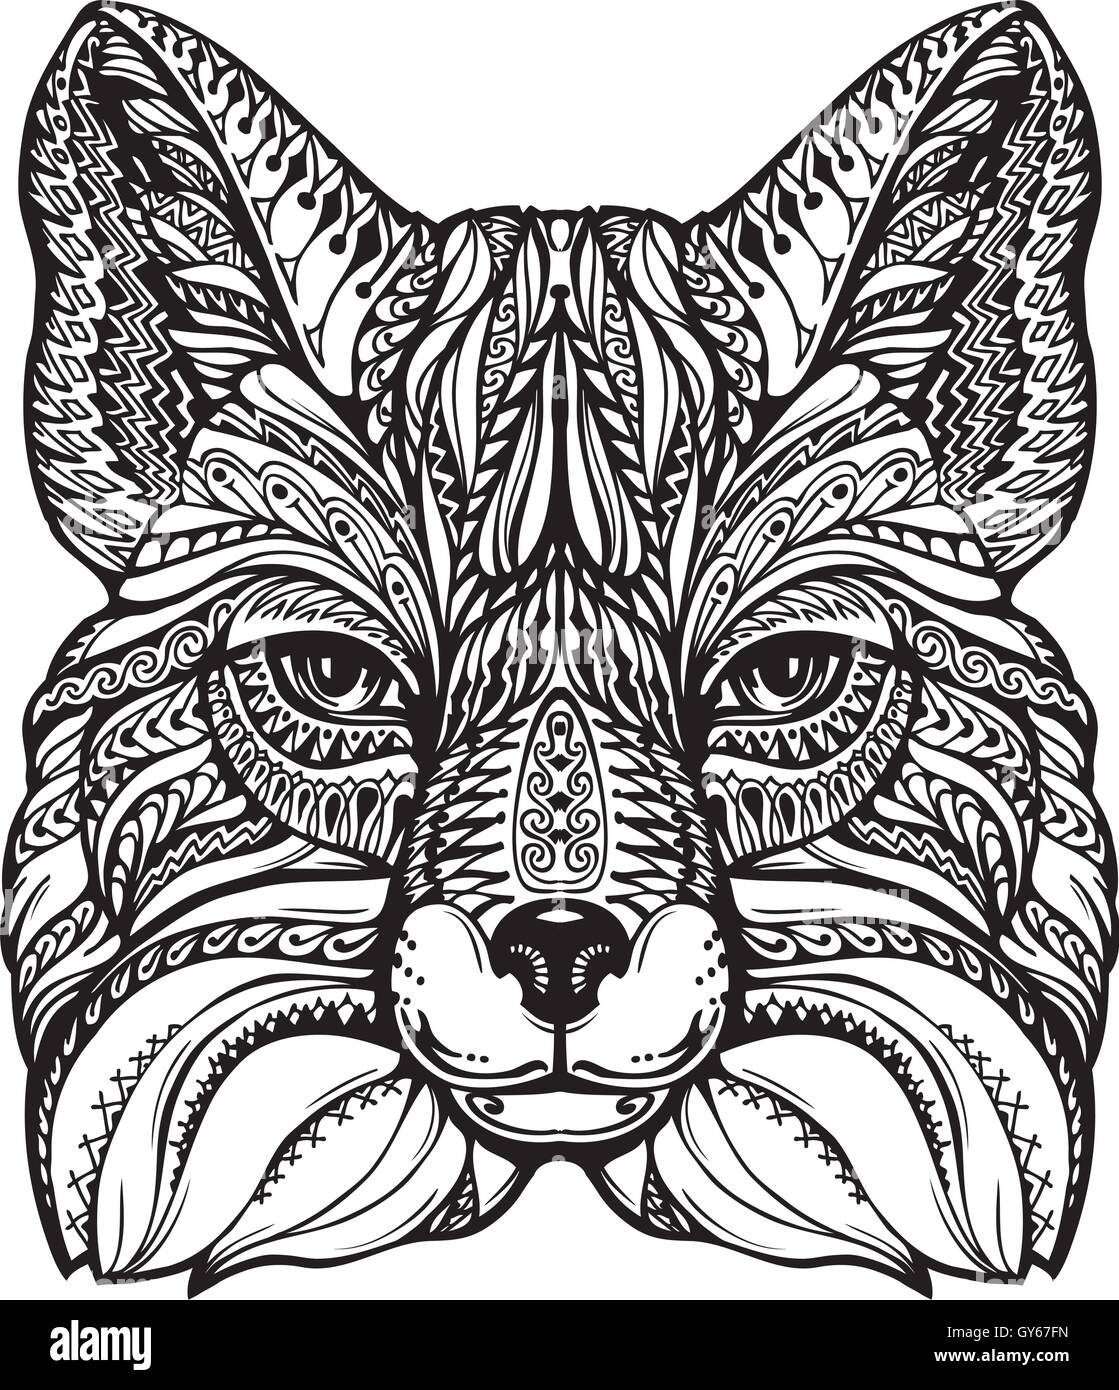 Fuchs-Ethno-graphischen Stil mit dekorativen Ornamenten und Mustern. Vektor-illustration Stock Vektor